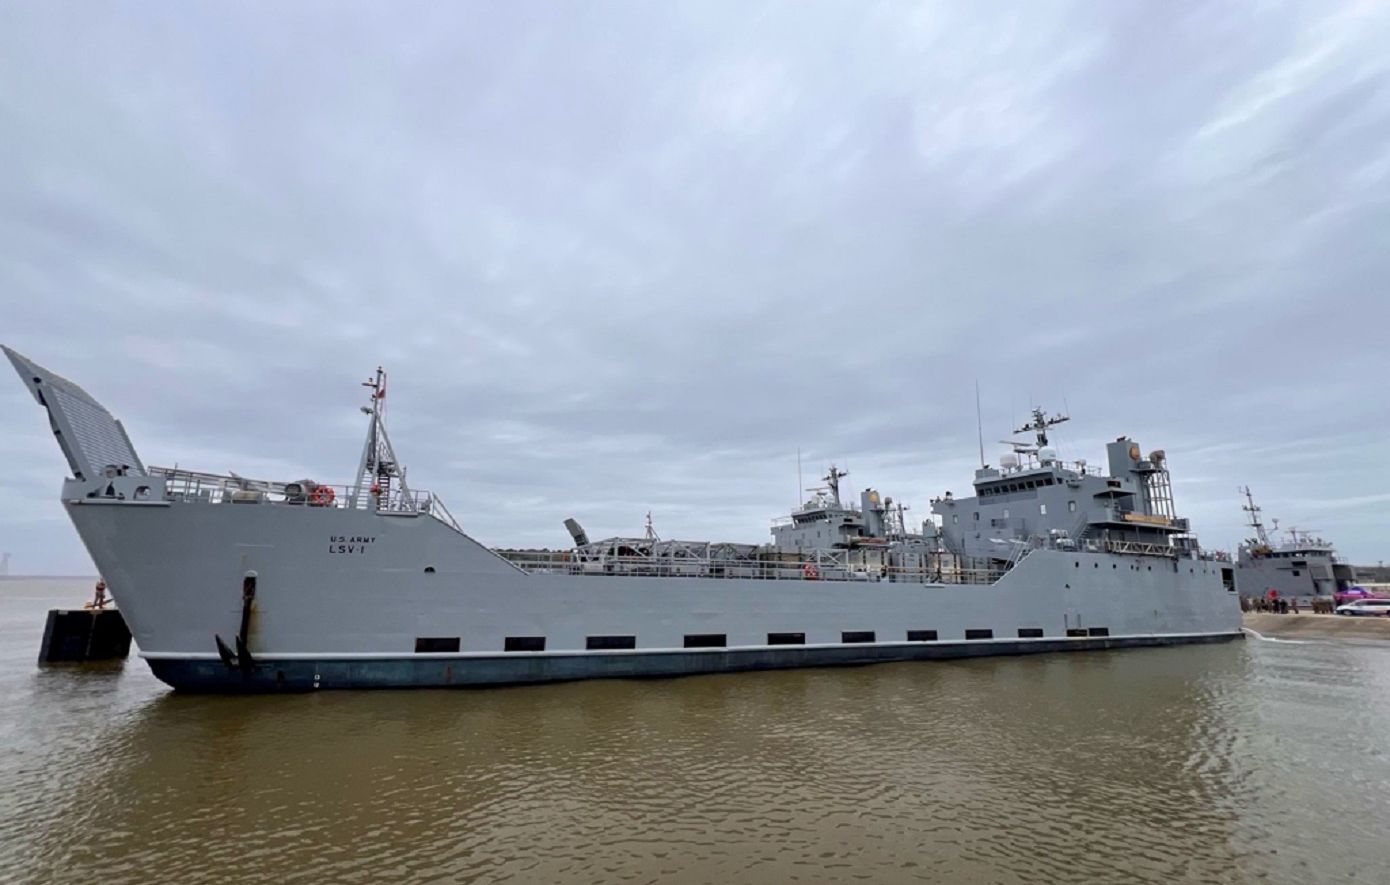 Πολεμικό πλοίο των ΗΠΑ κατευθύνεται στην ανατολική Μεσόγειο για να ενισχύσει την παροχή ανθρωπιστικής βοήθειας στη Γάζα